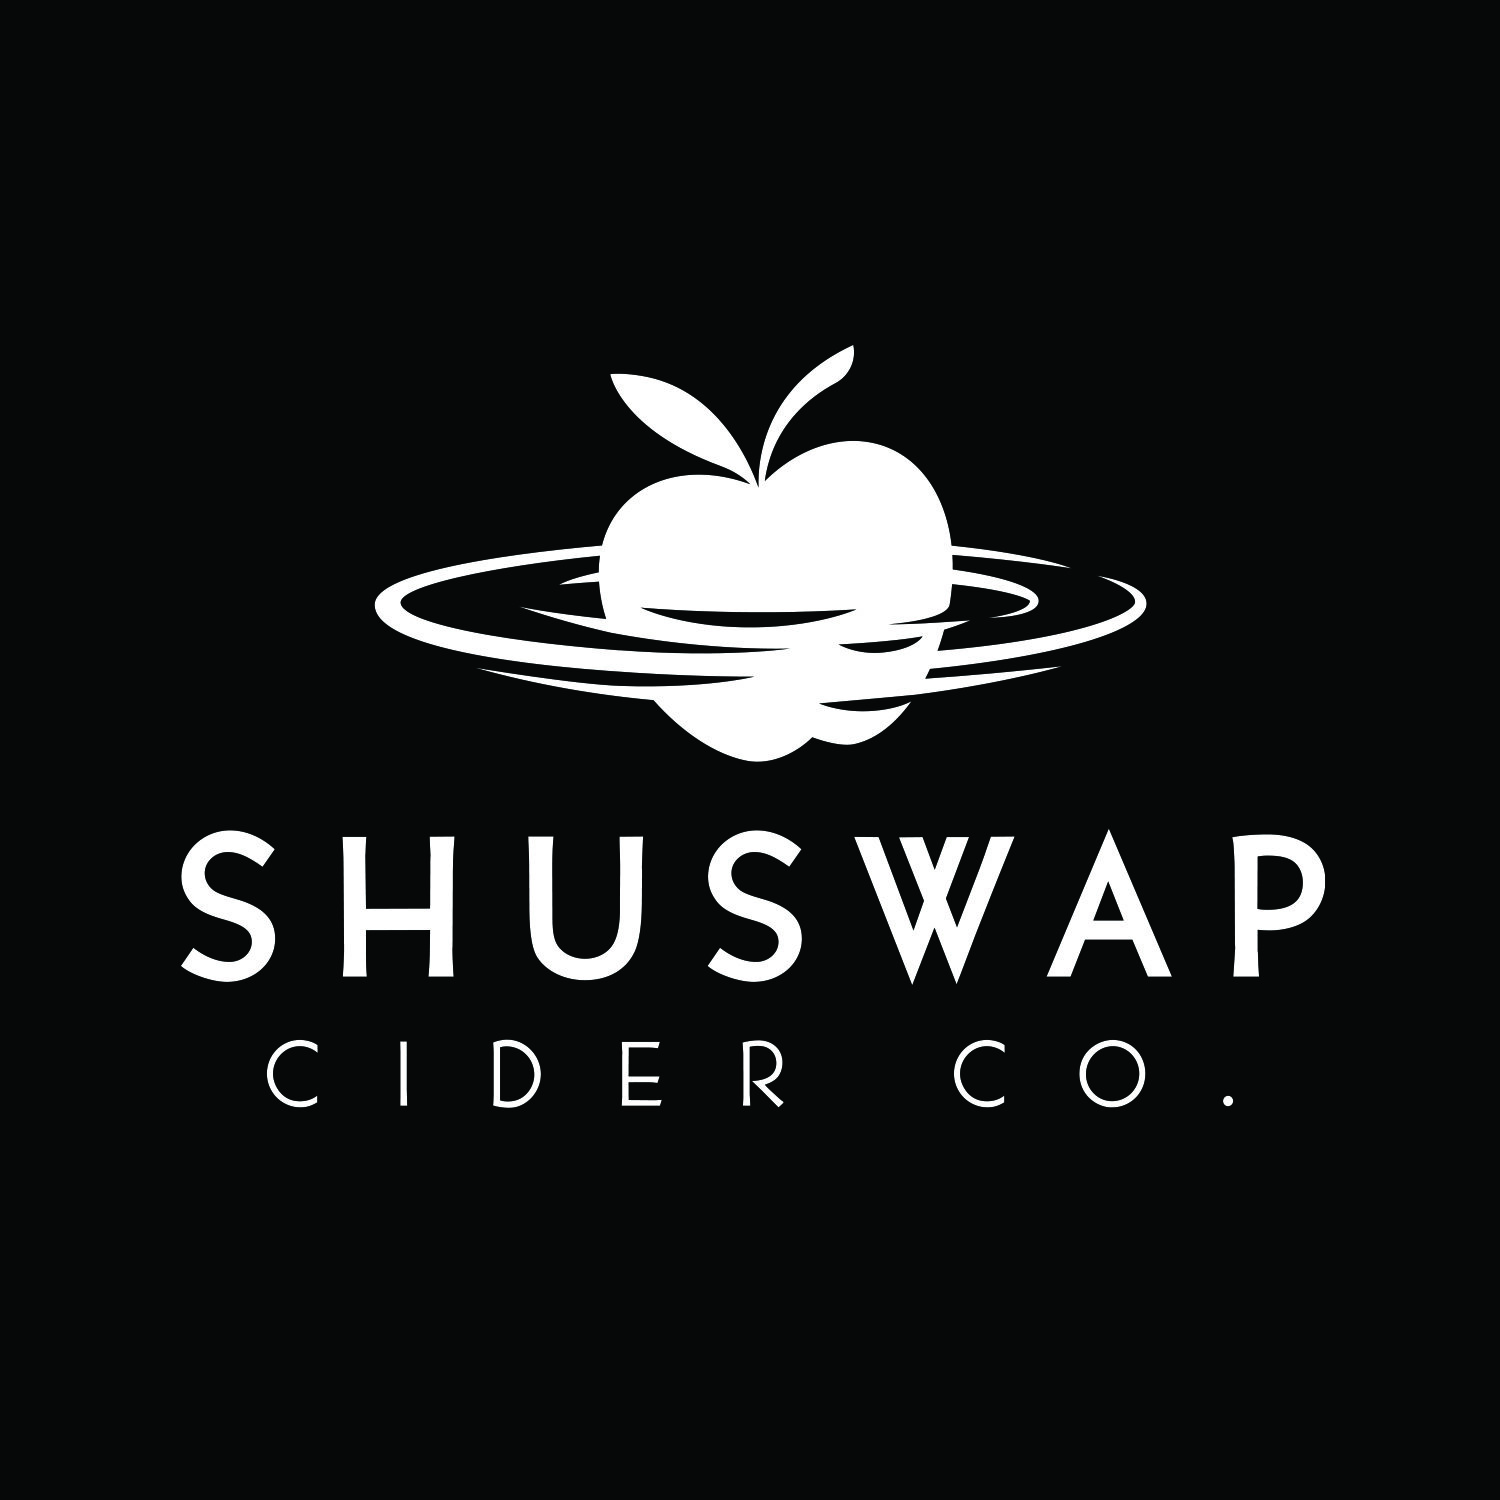 Shuswap Cider Co. logo